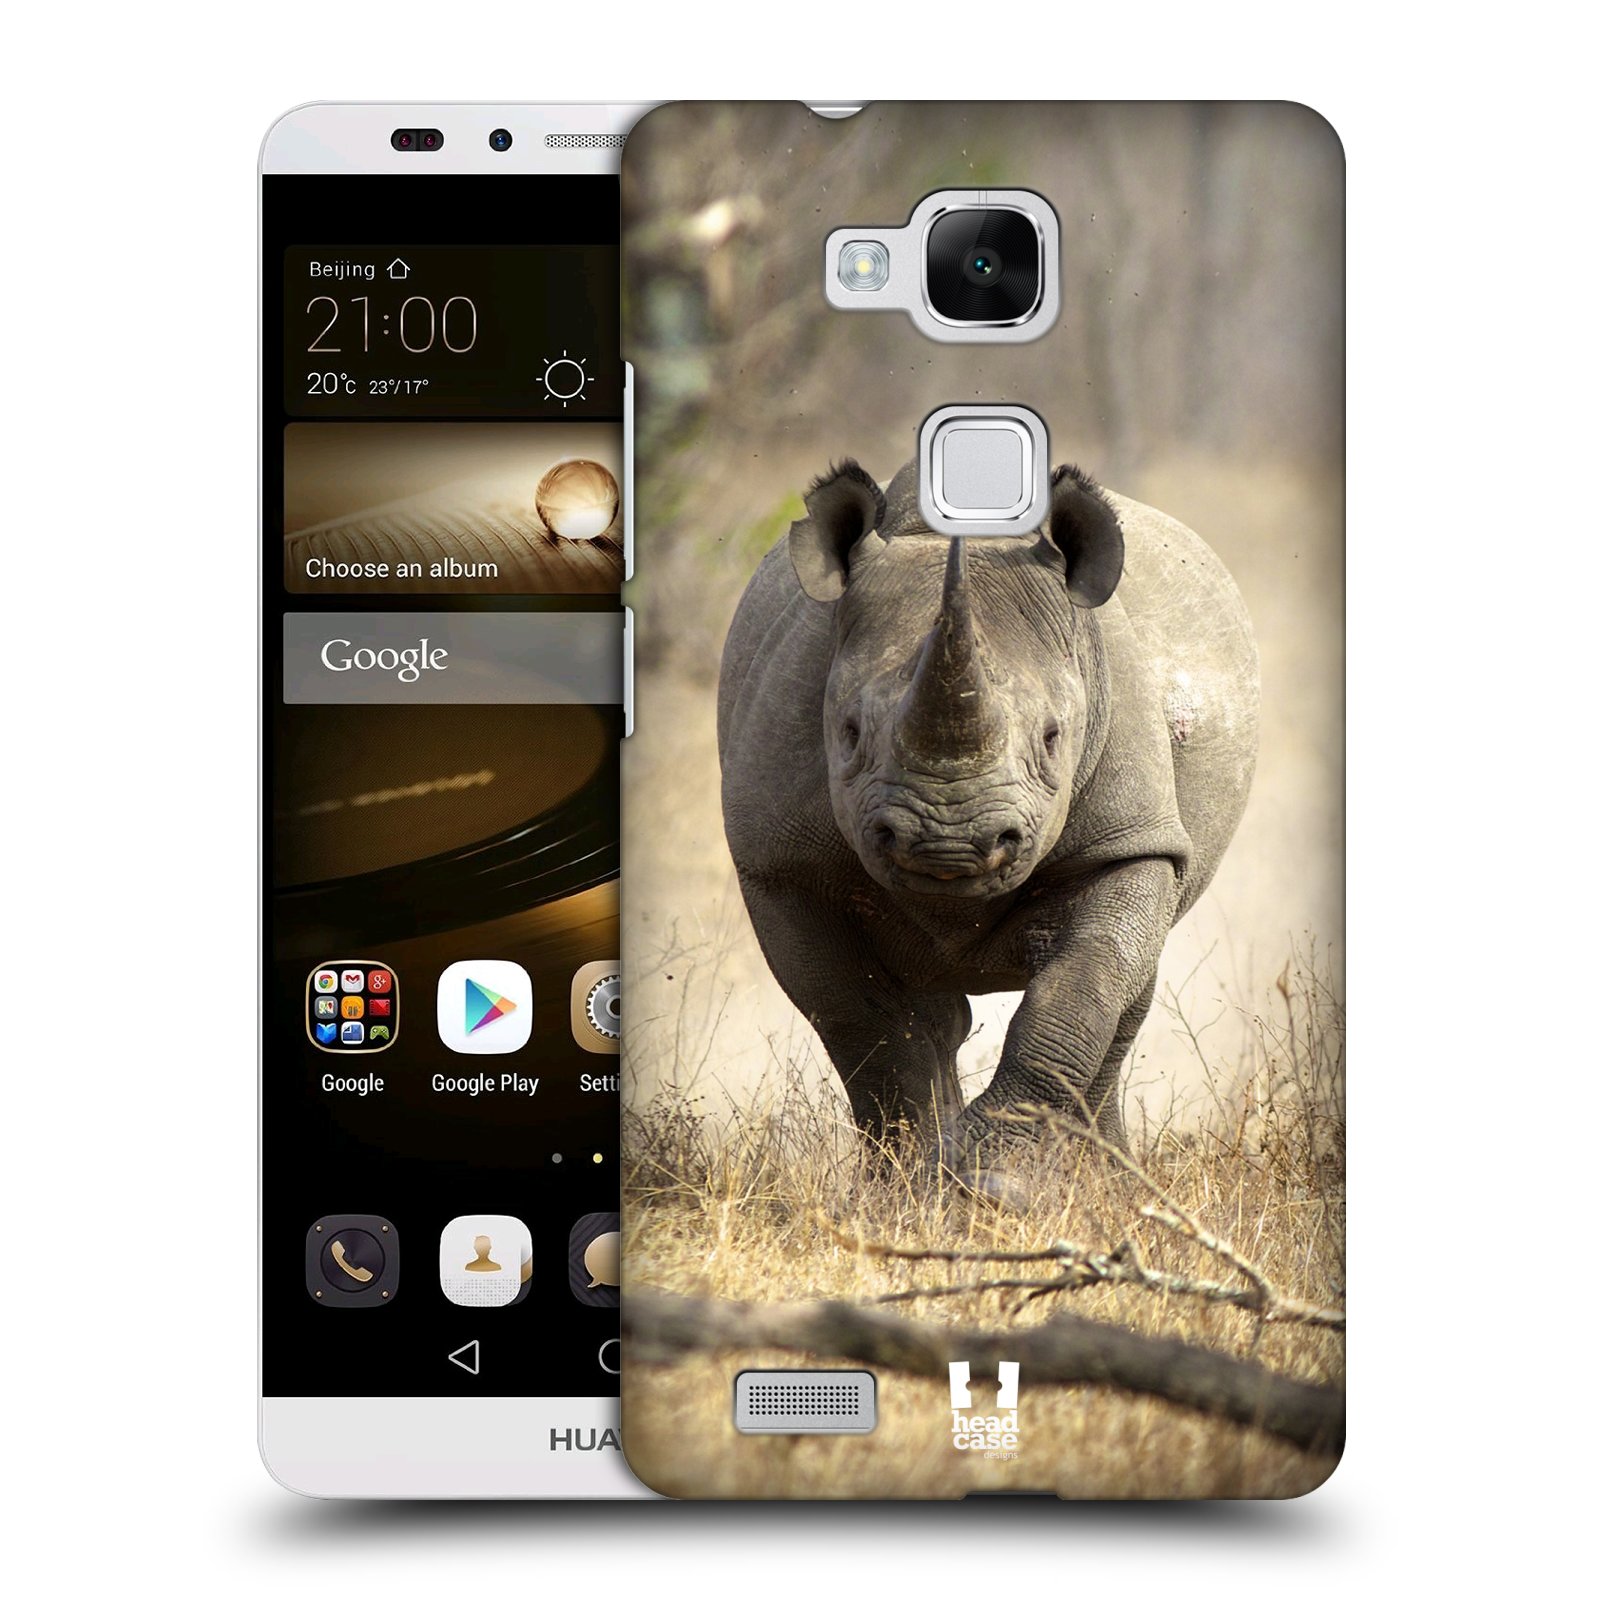 HEAD CASE plastový obal na mobil Huawei Mate 7 vzor Divočina, Divoký život a zvířata foto AFRIKA BĚŽÍCÍ NOSOROŽEC